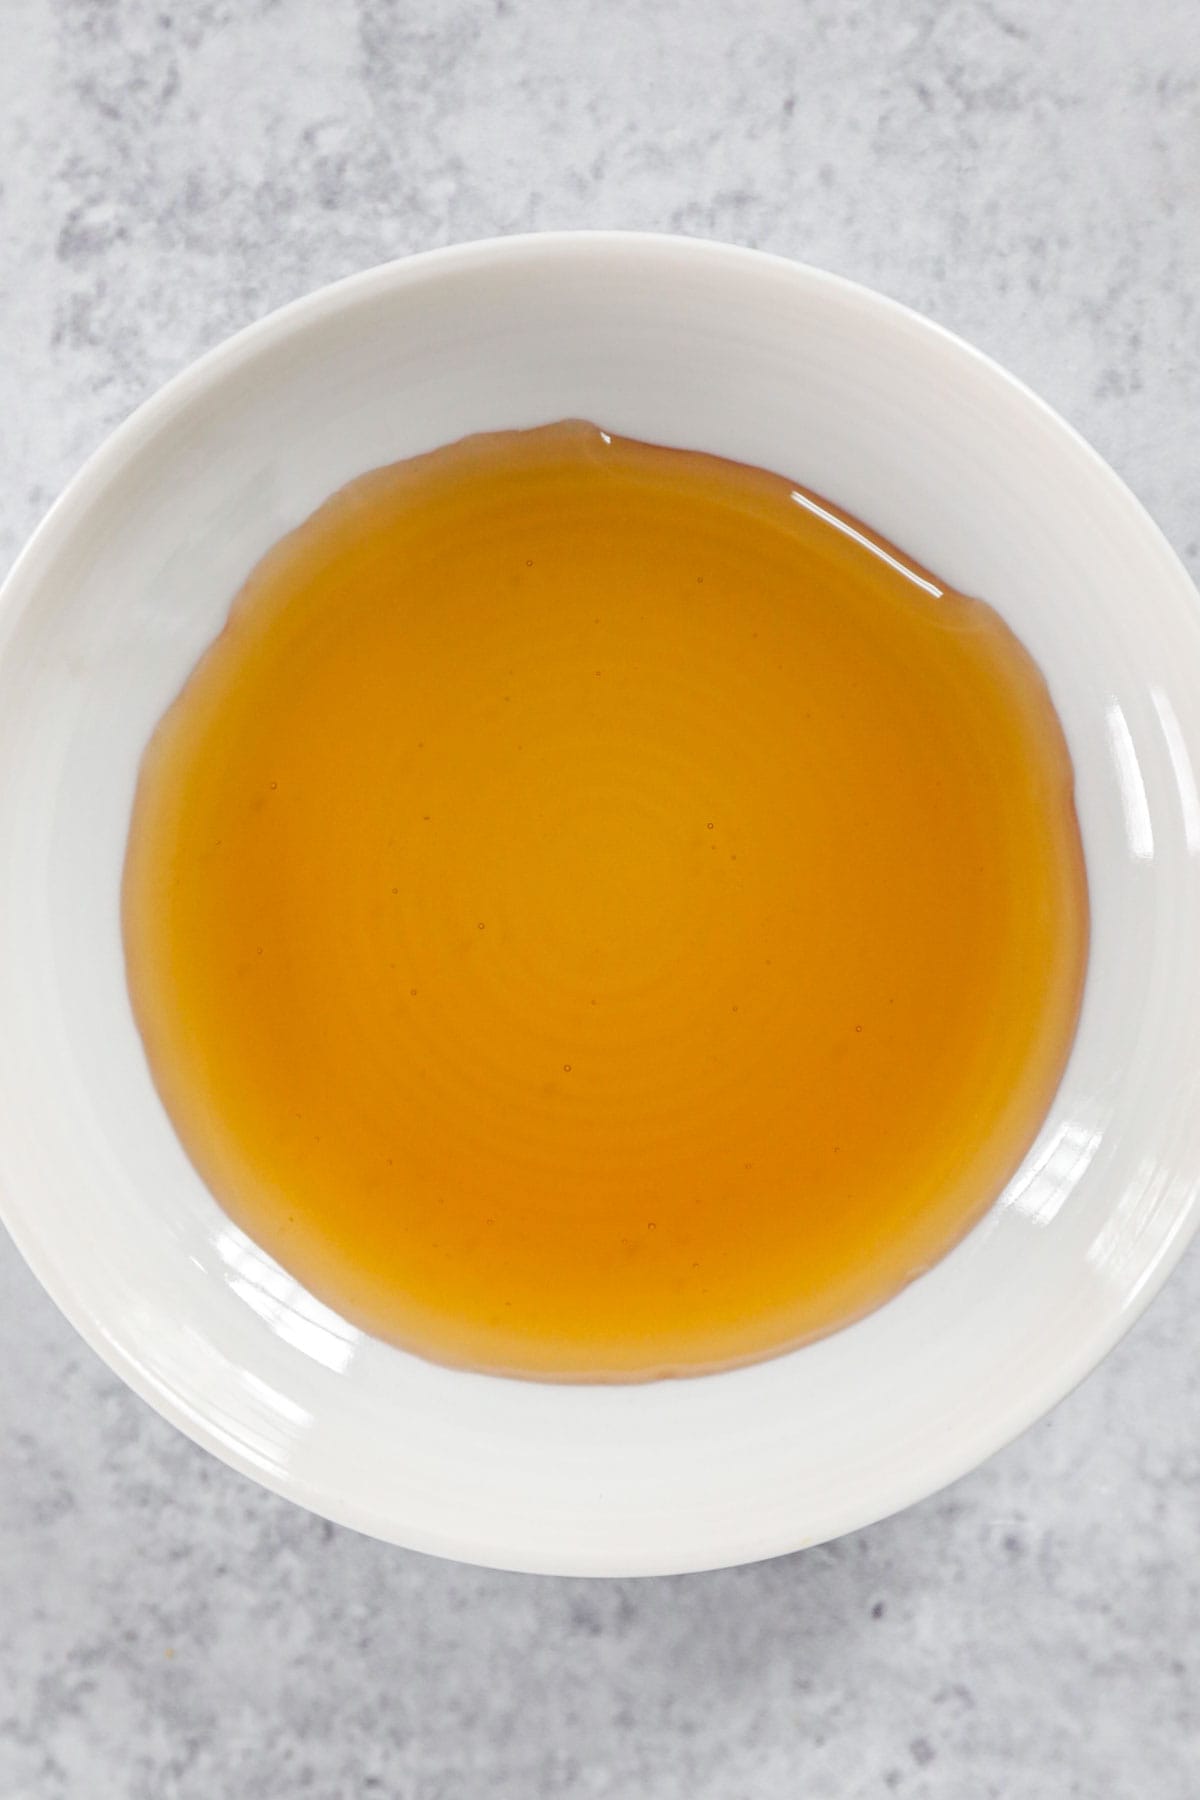 Toasted sesame oil